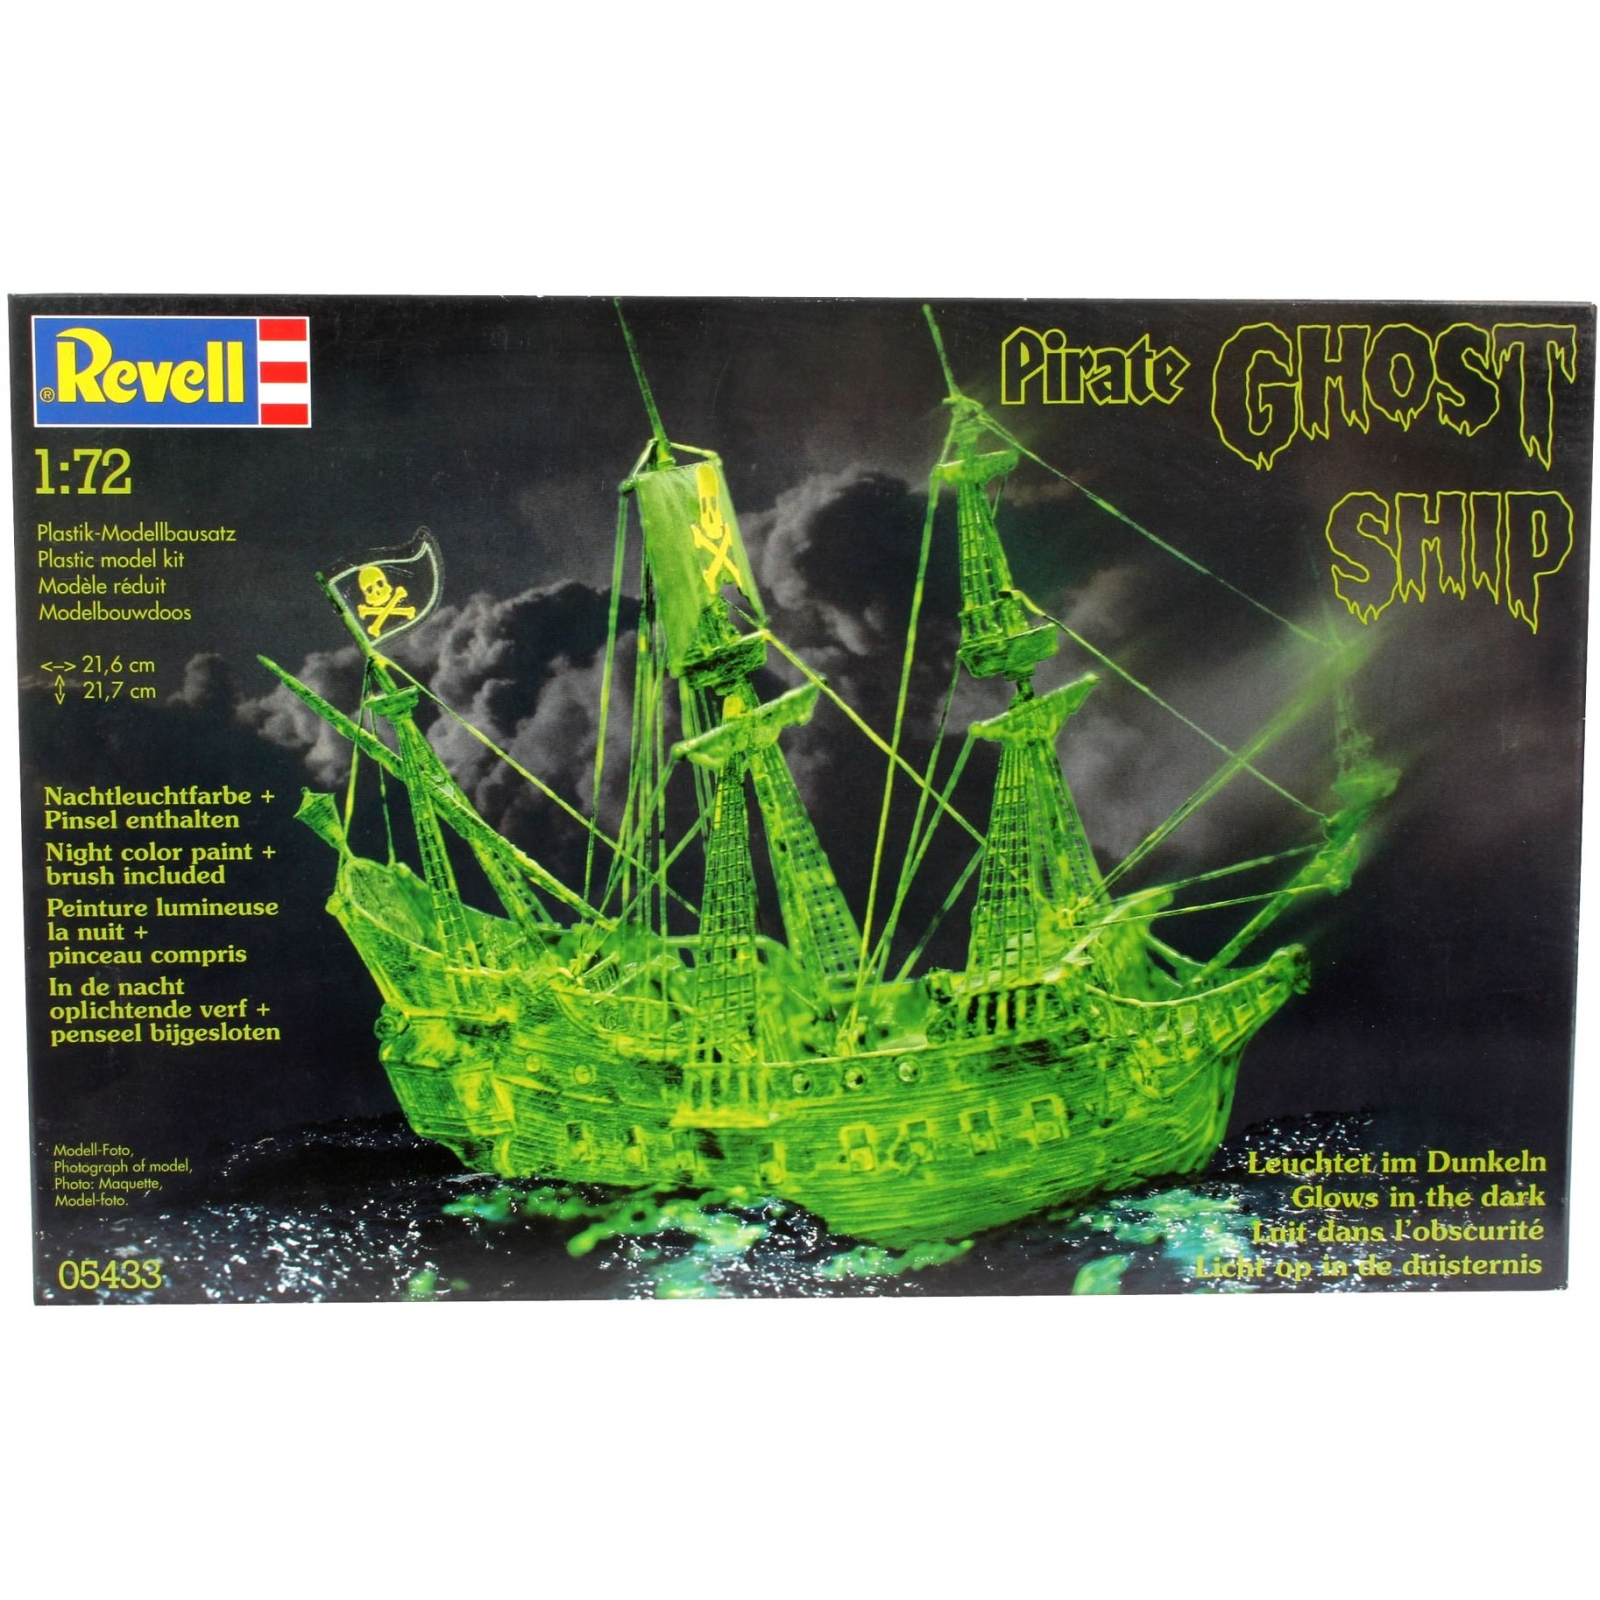 Сборная модель Revell Пиратское судно-призрак Ghost ship with night colour 1:72 (5433)